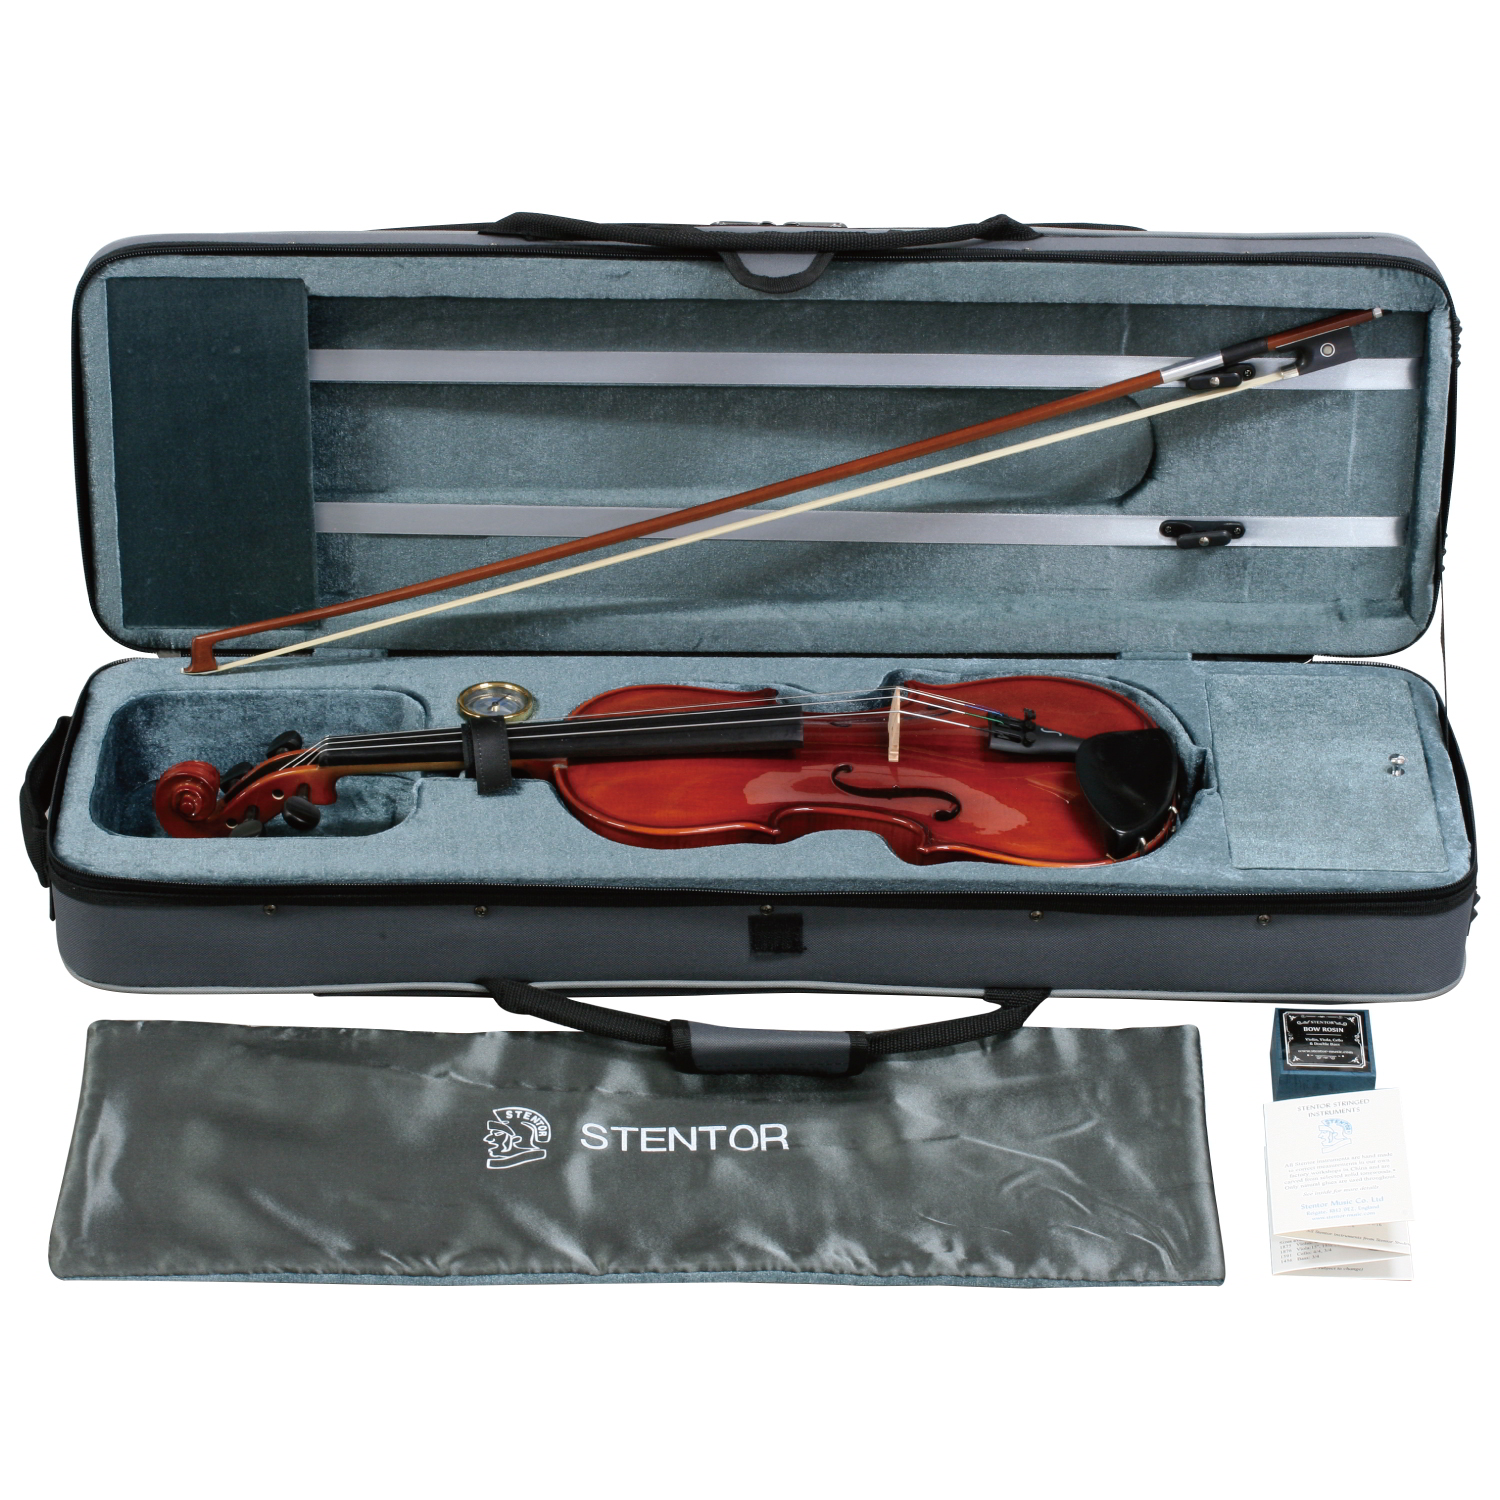 STENTOR バイオリンSV-320 4/4 (1550/A) Violin新品即納可能です